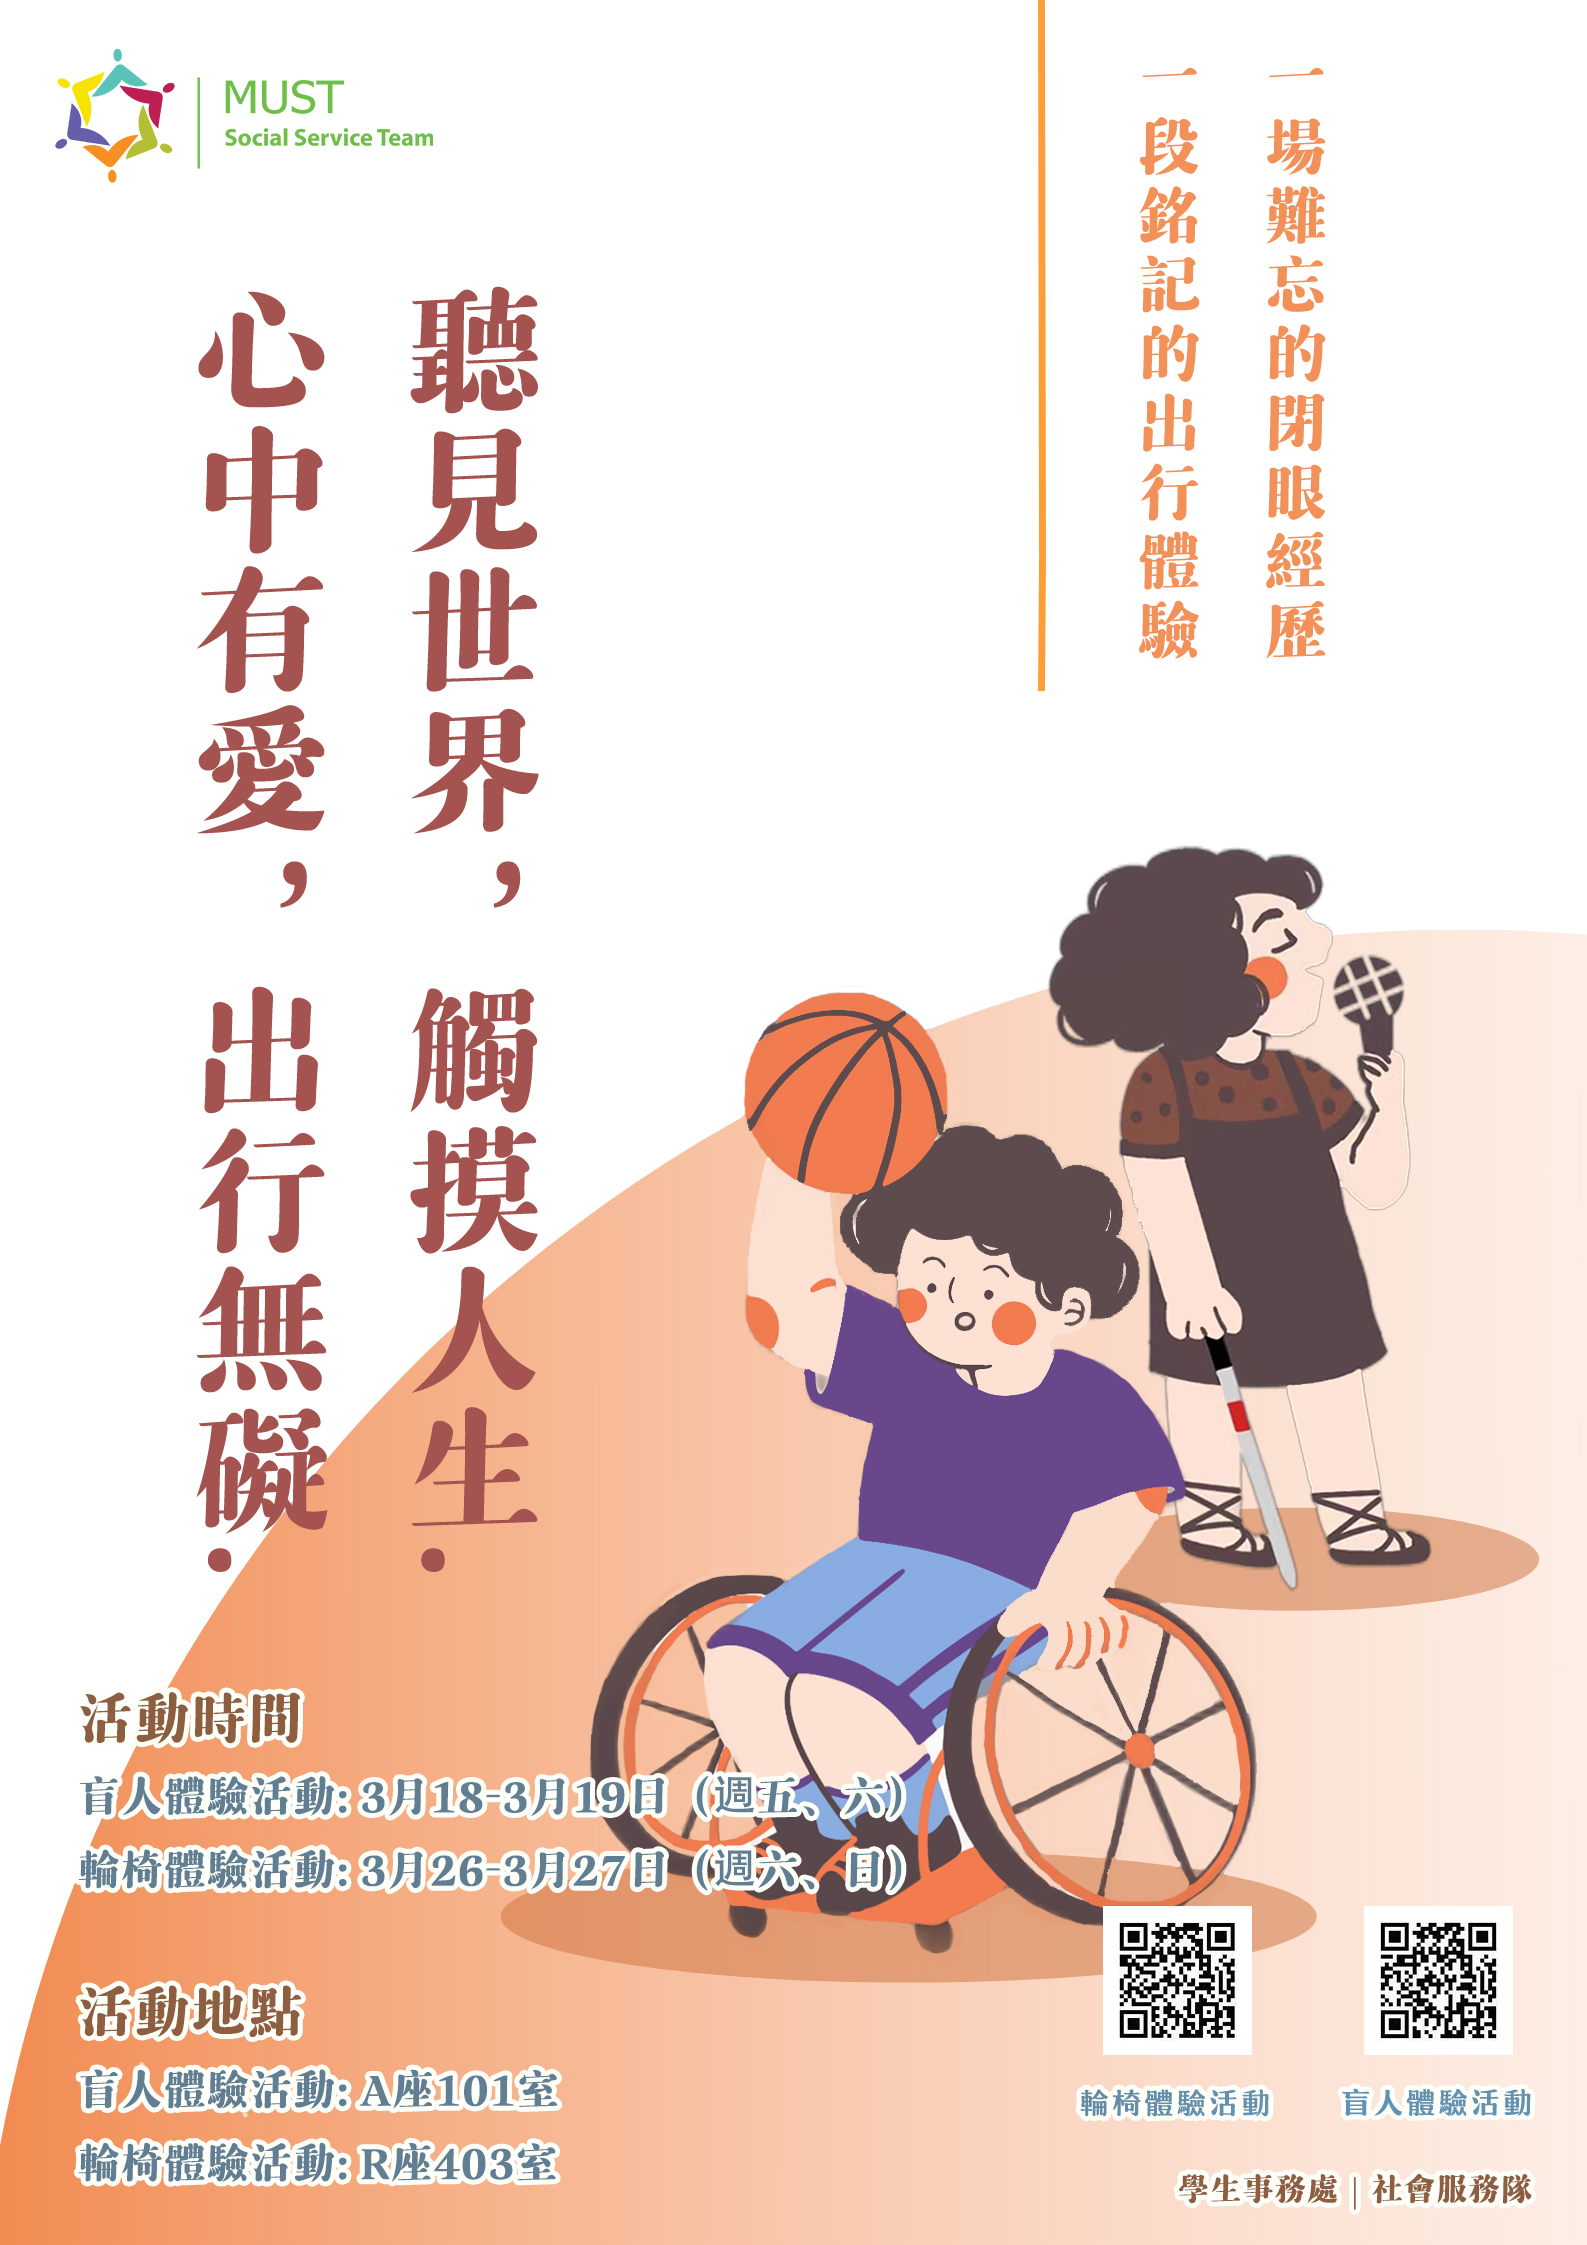 2022.03.10 盲人體驗活動及輪椅體驗活動 海報